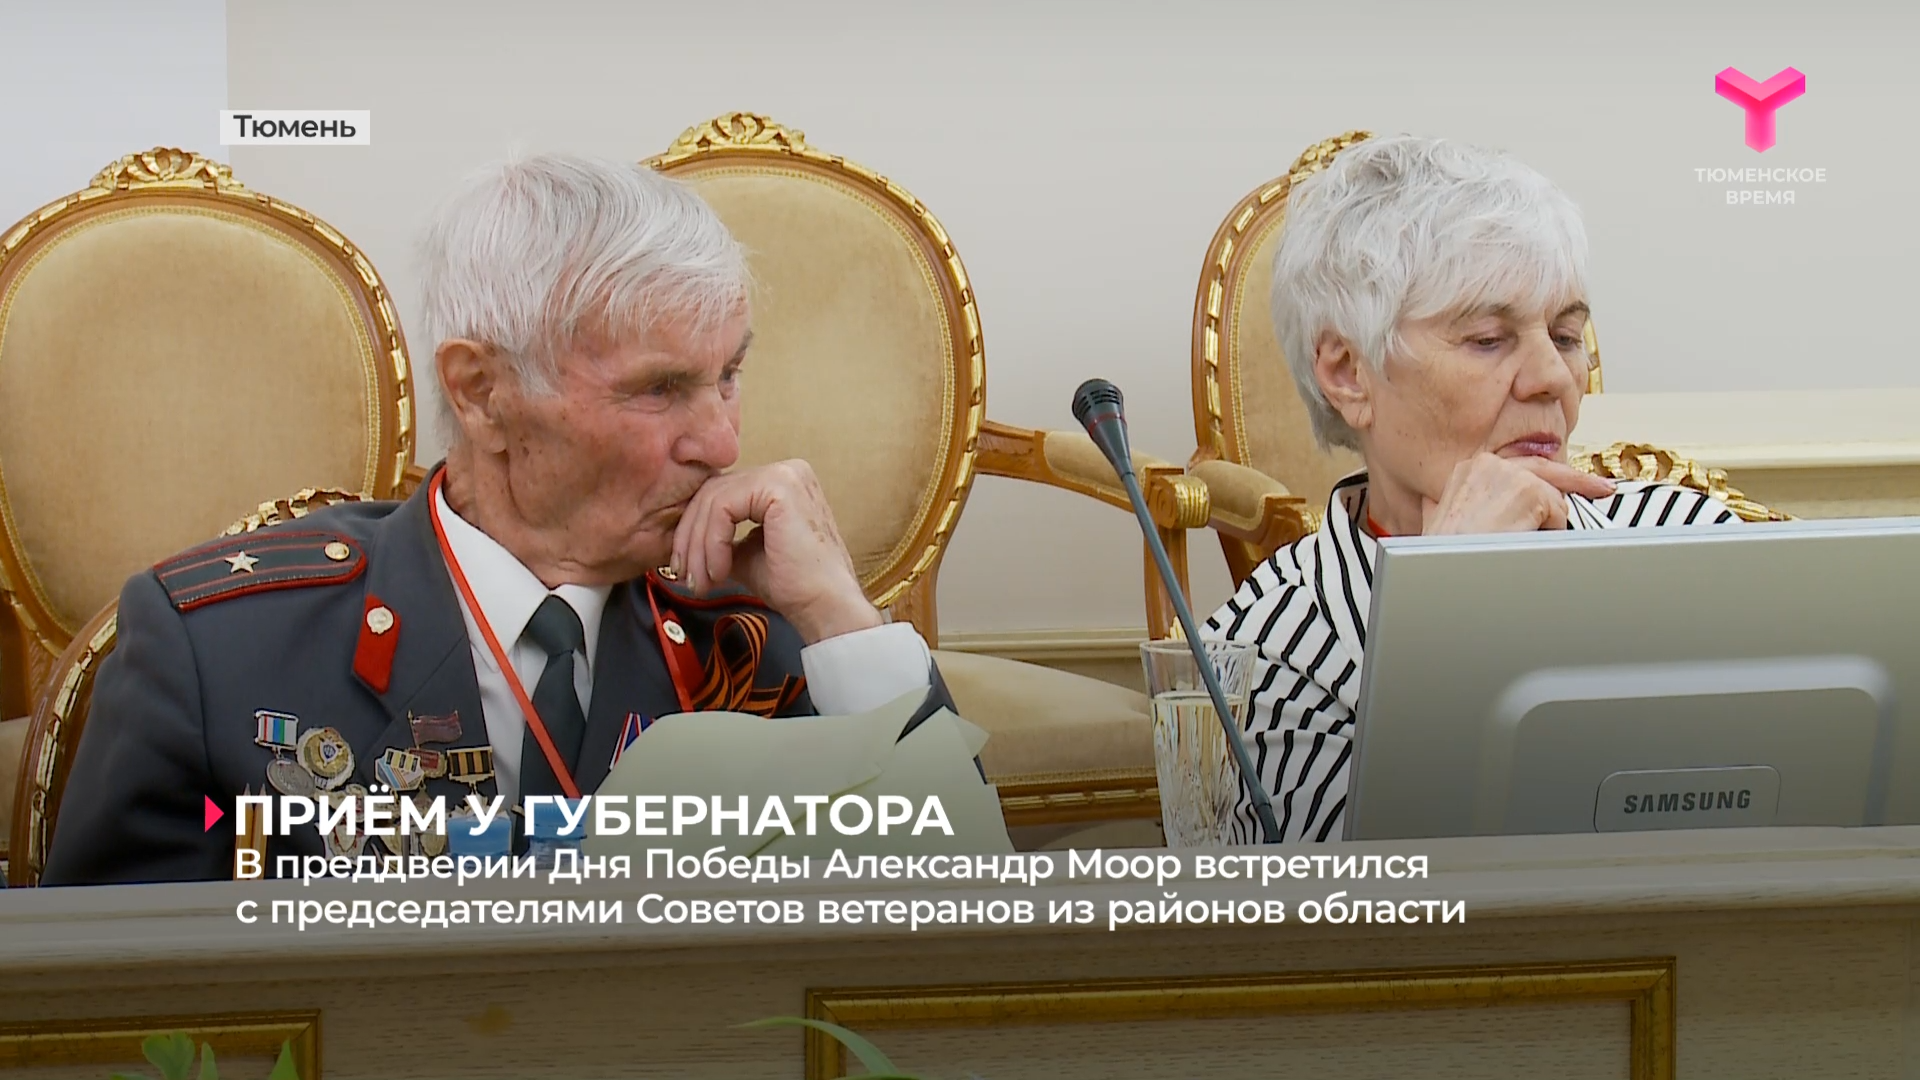 В преддверии Дня Победы Александр Моор встретился с председателями Советов ветеранов